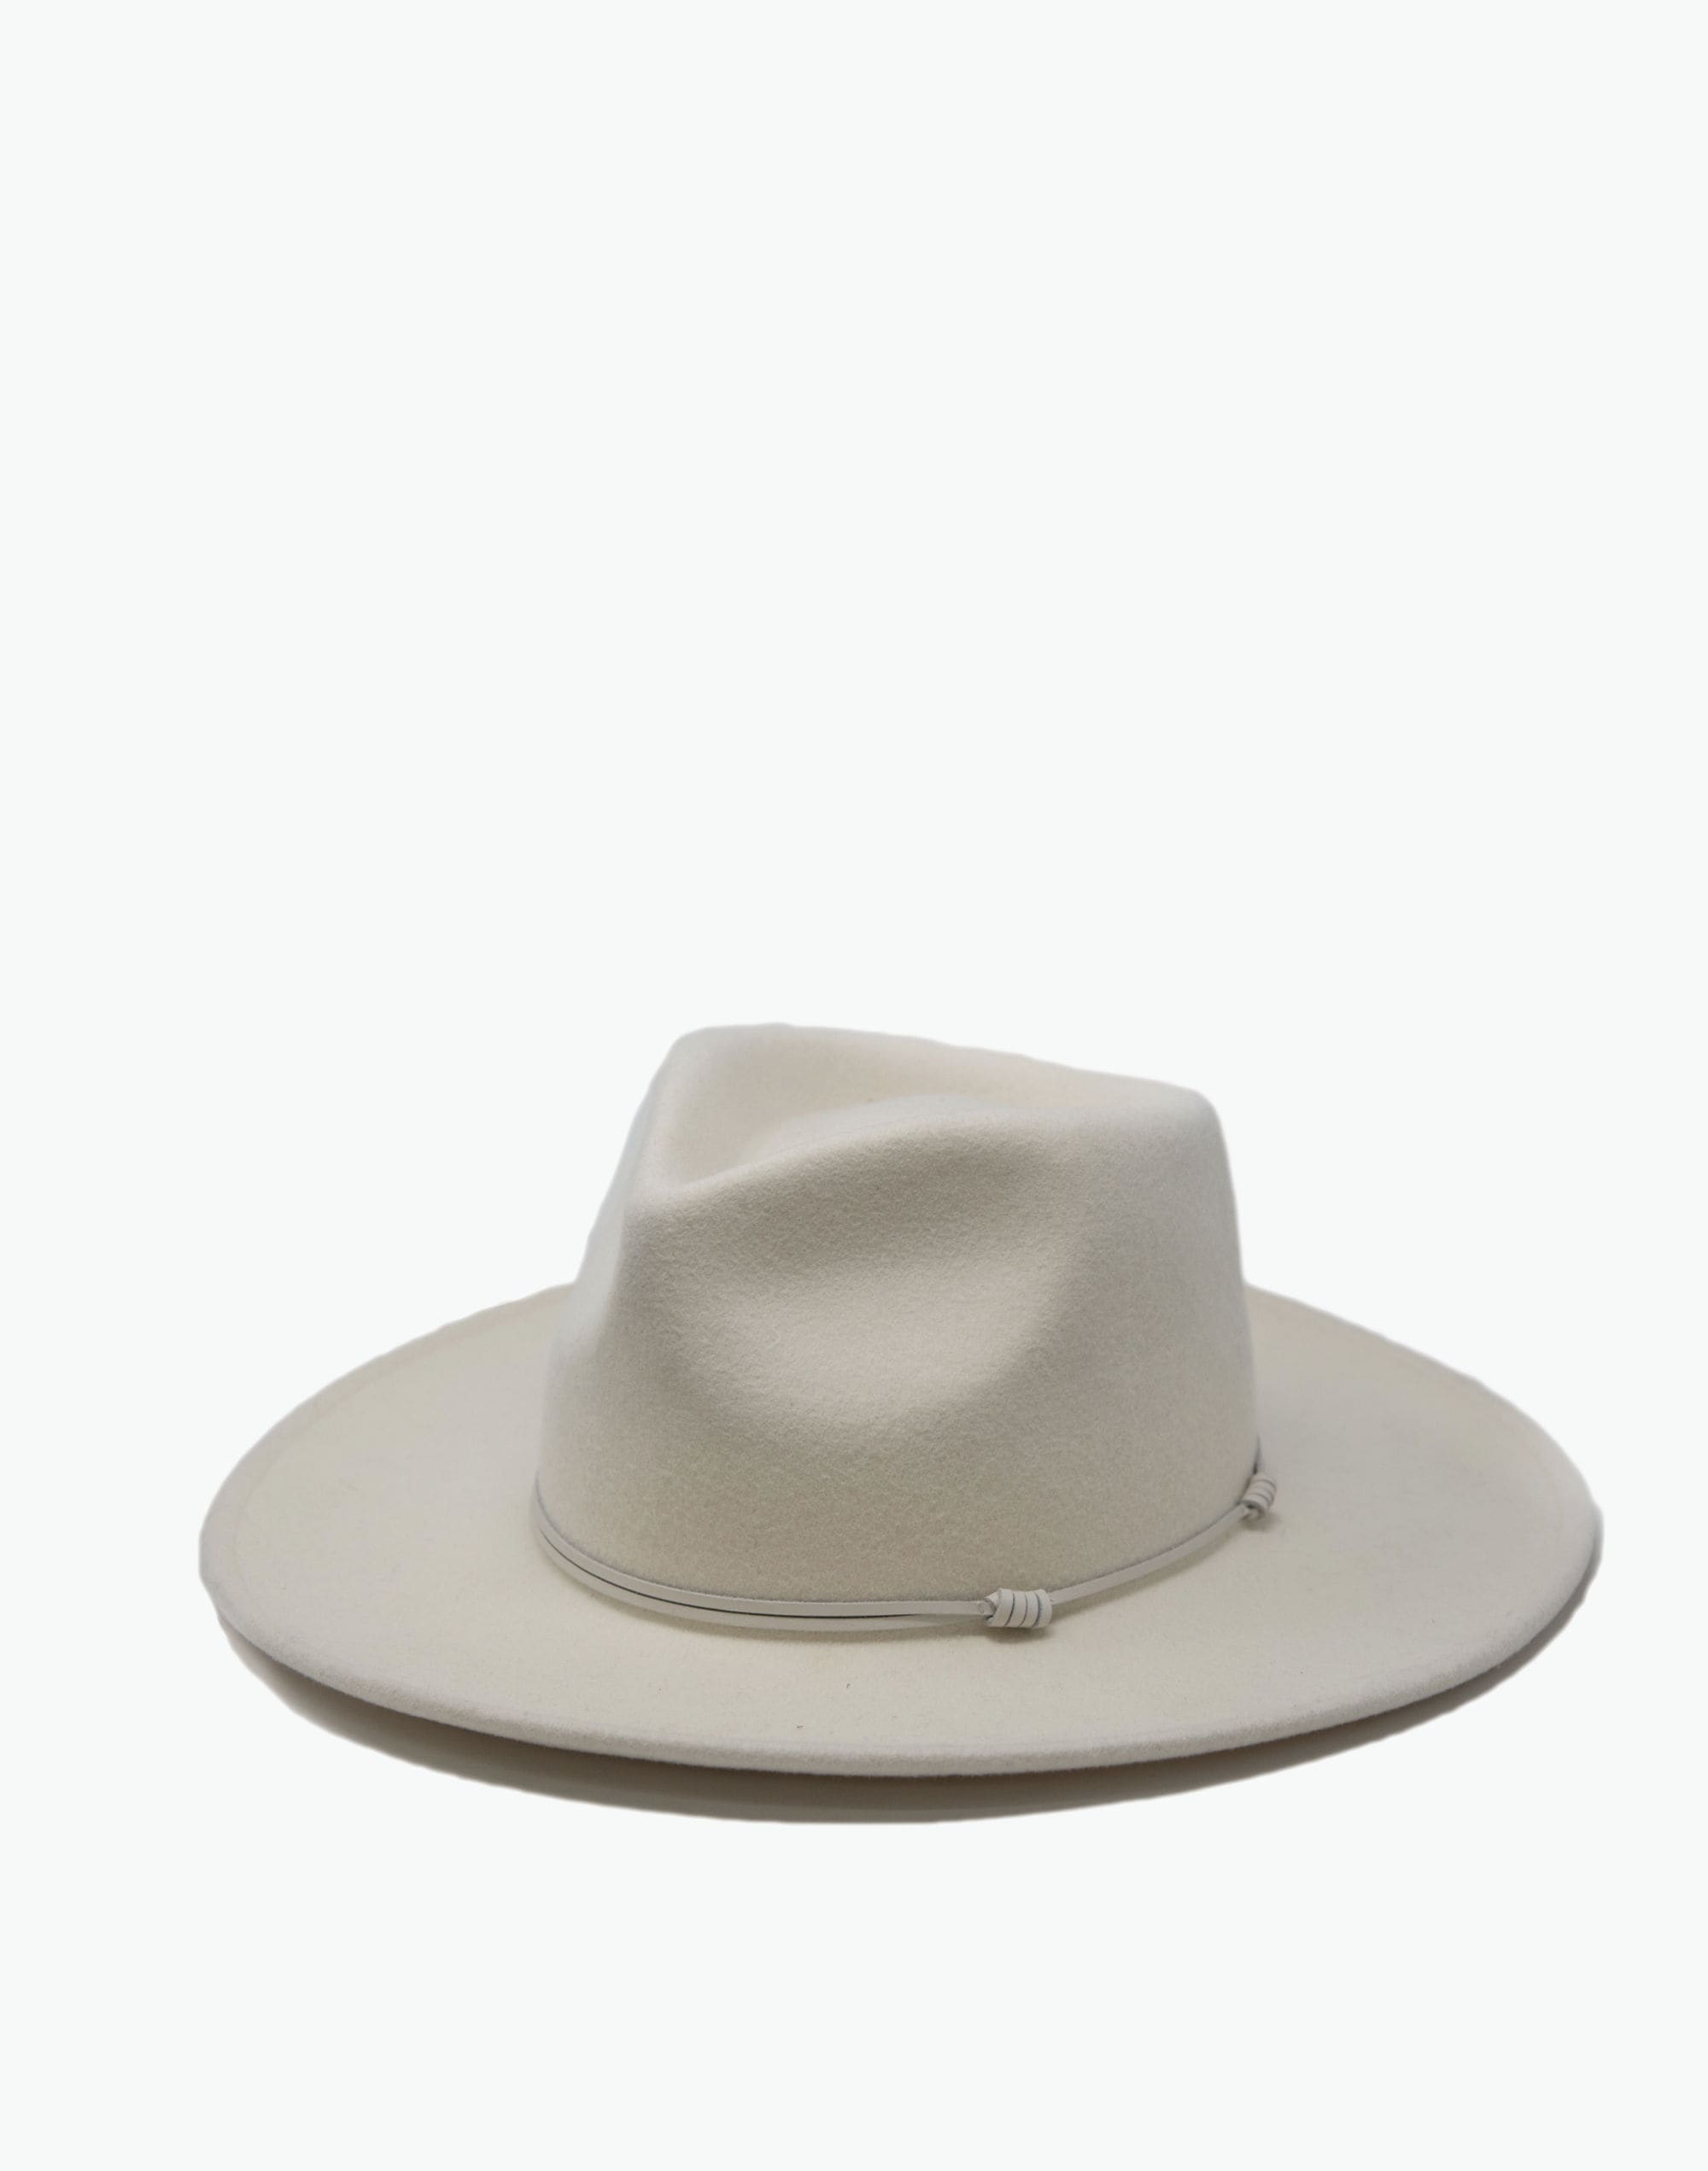 WYETH™ Wool Felt London Hat